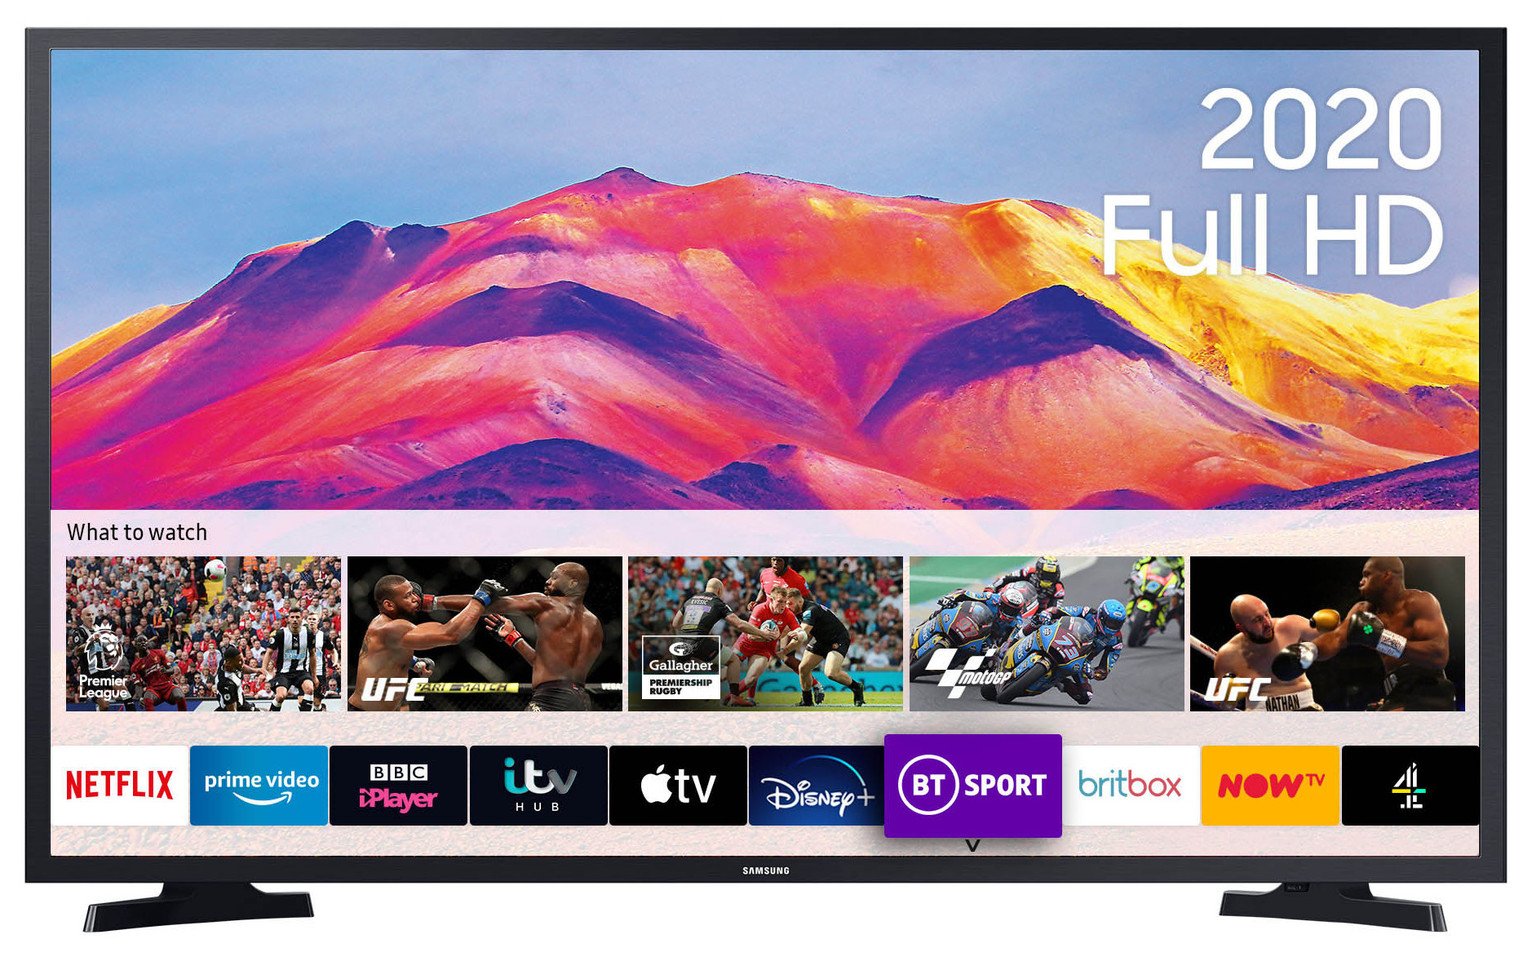 Samsung 40 Inch UE40T5300 Smart Full HD HDR LED TV